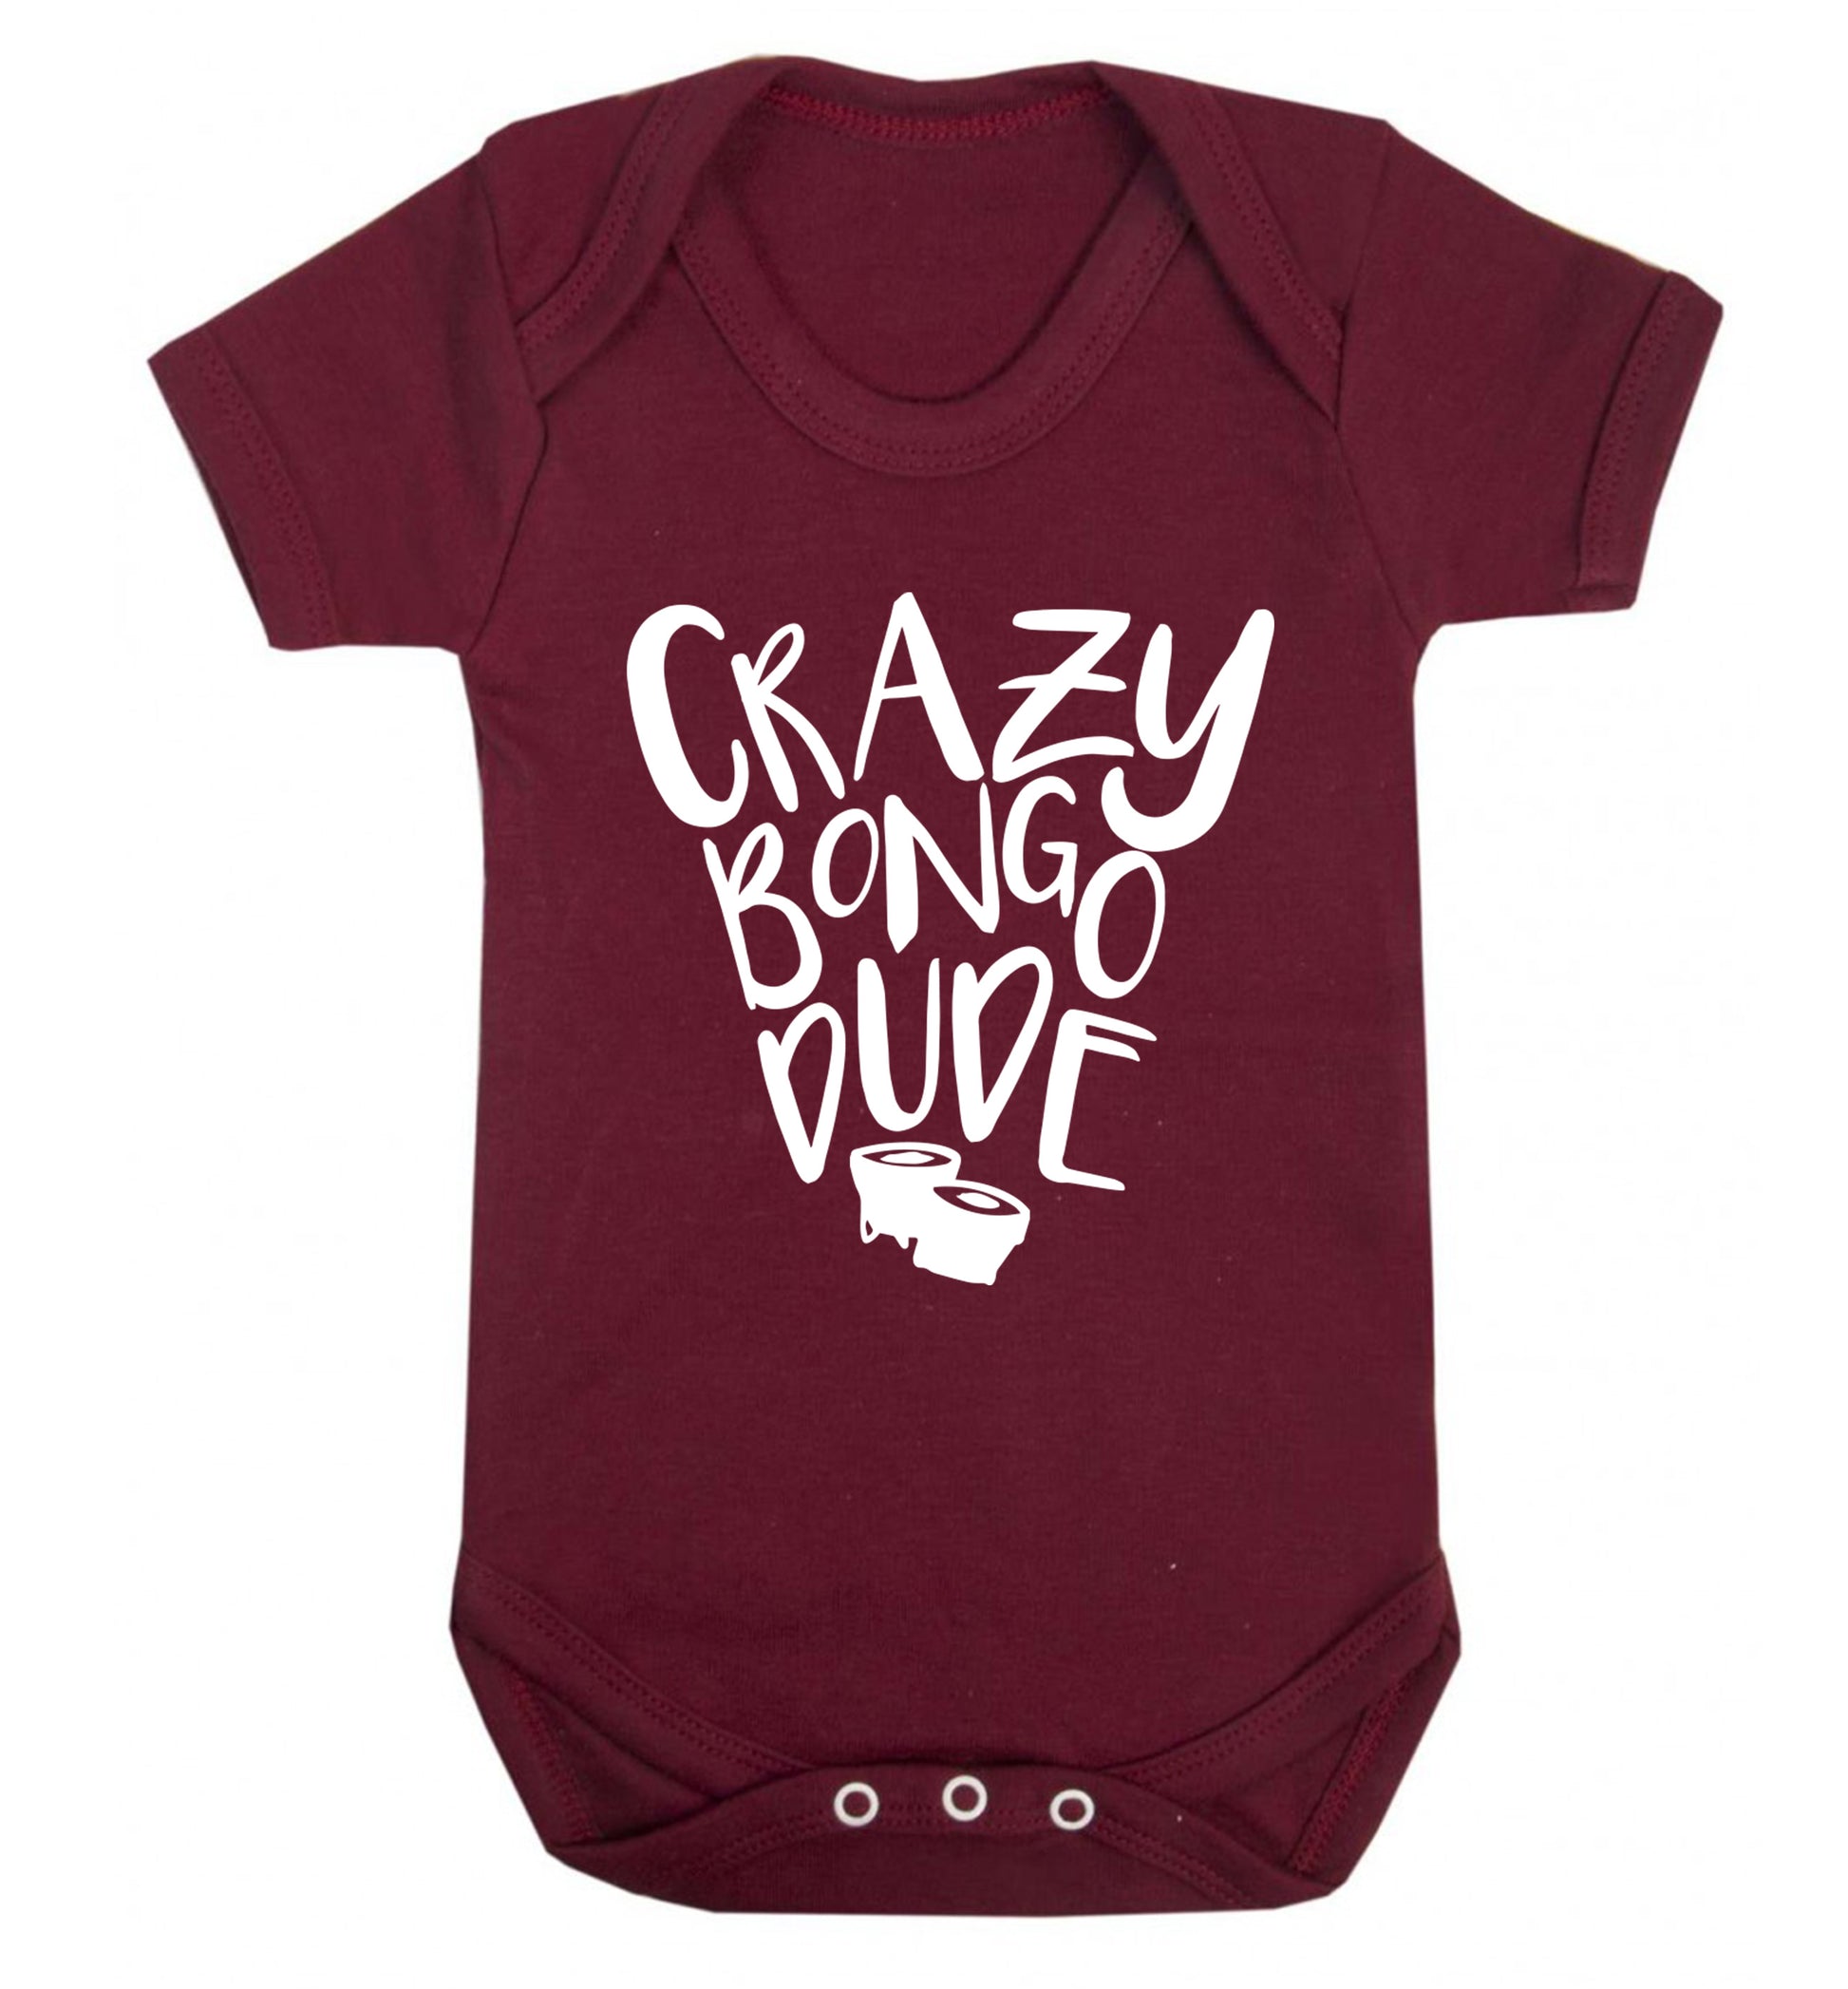 Crazy bongo dude Baby Vest maroon 18-24 months